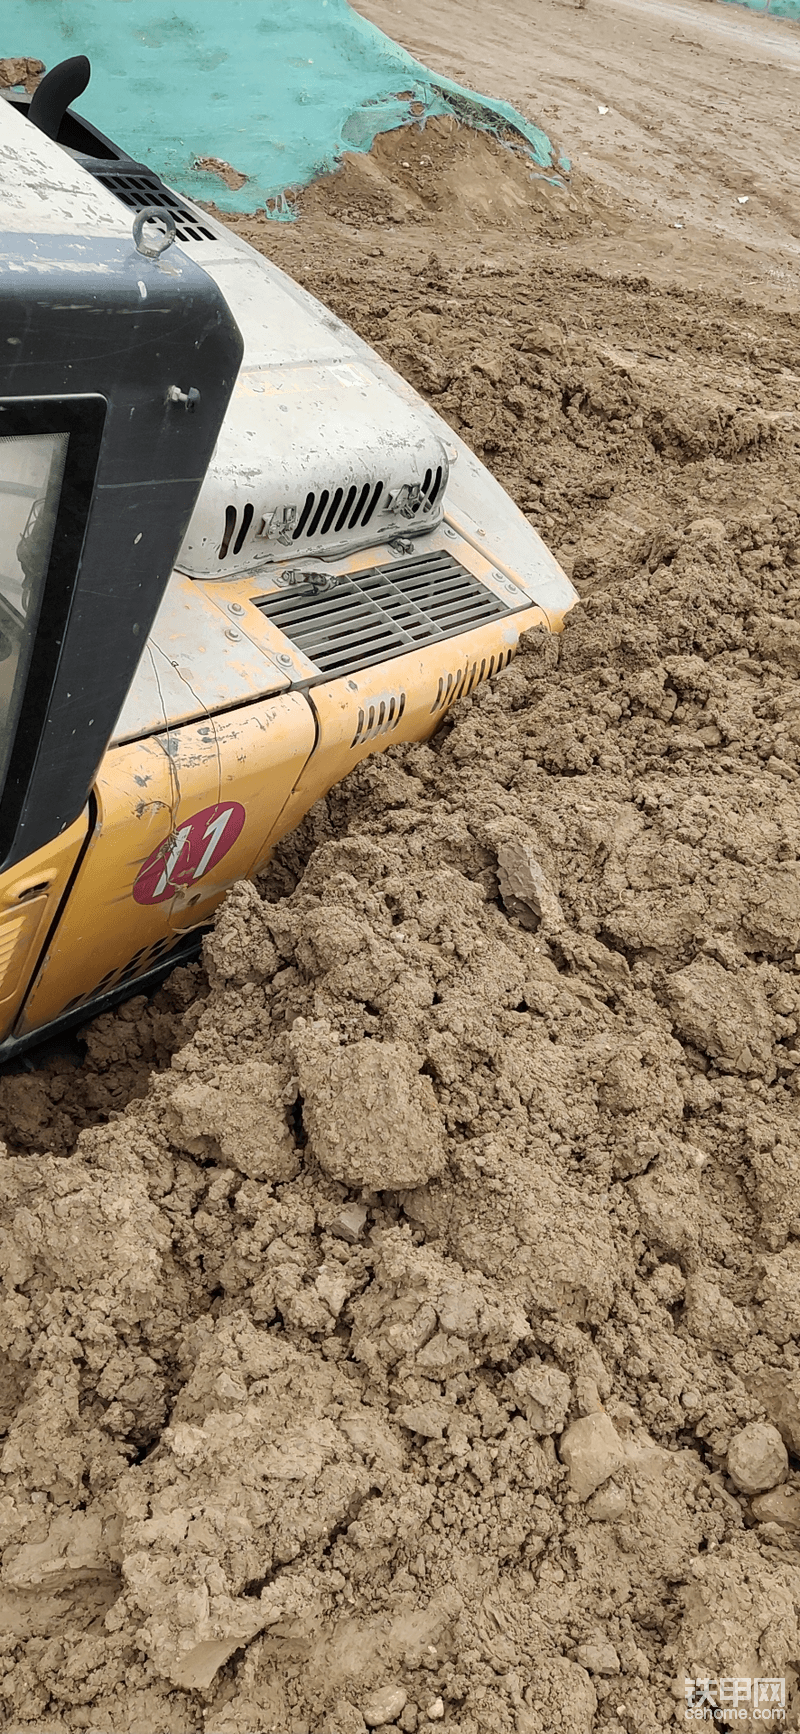 最后找工地另一台挖机把驾驶室一侧和屁股的泥挖掉，手拉手出来的。